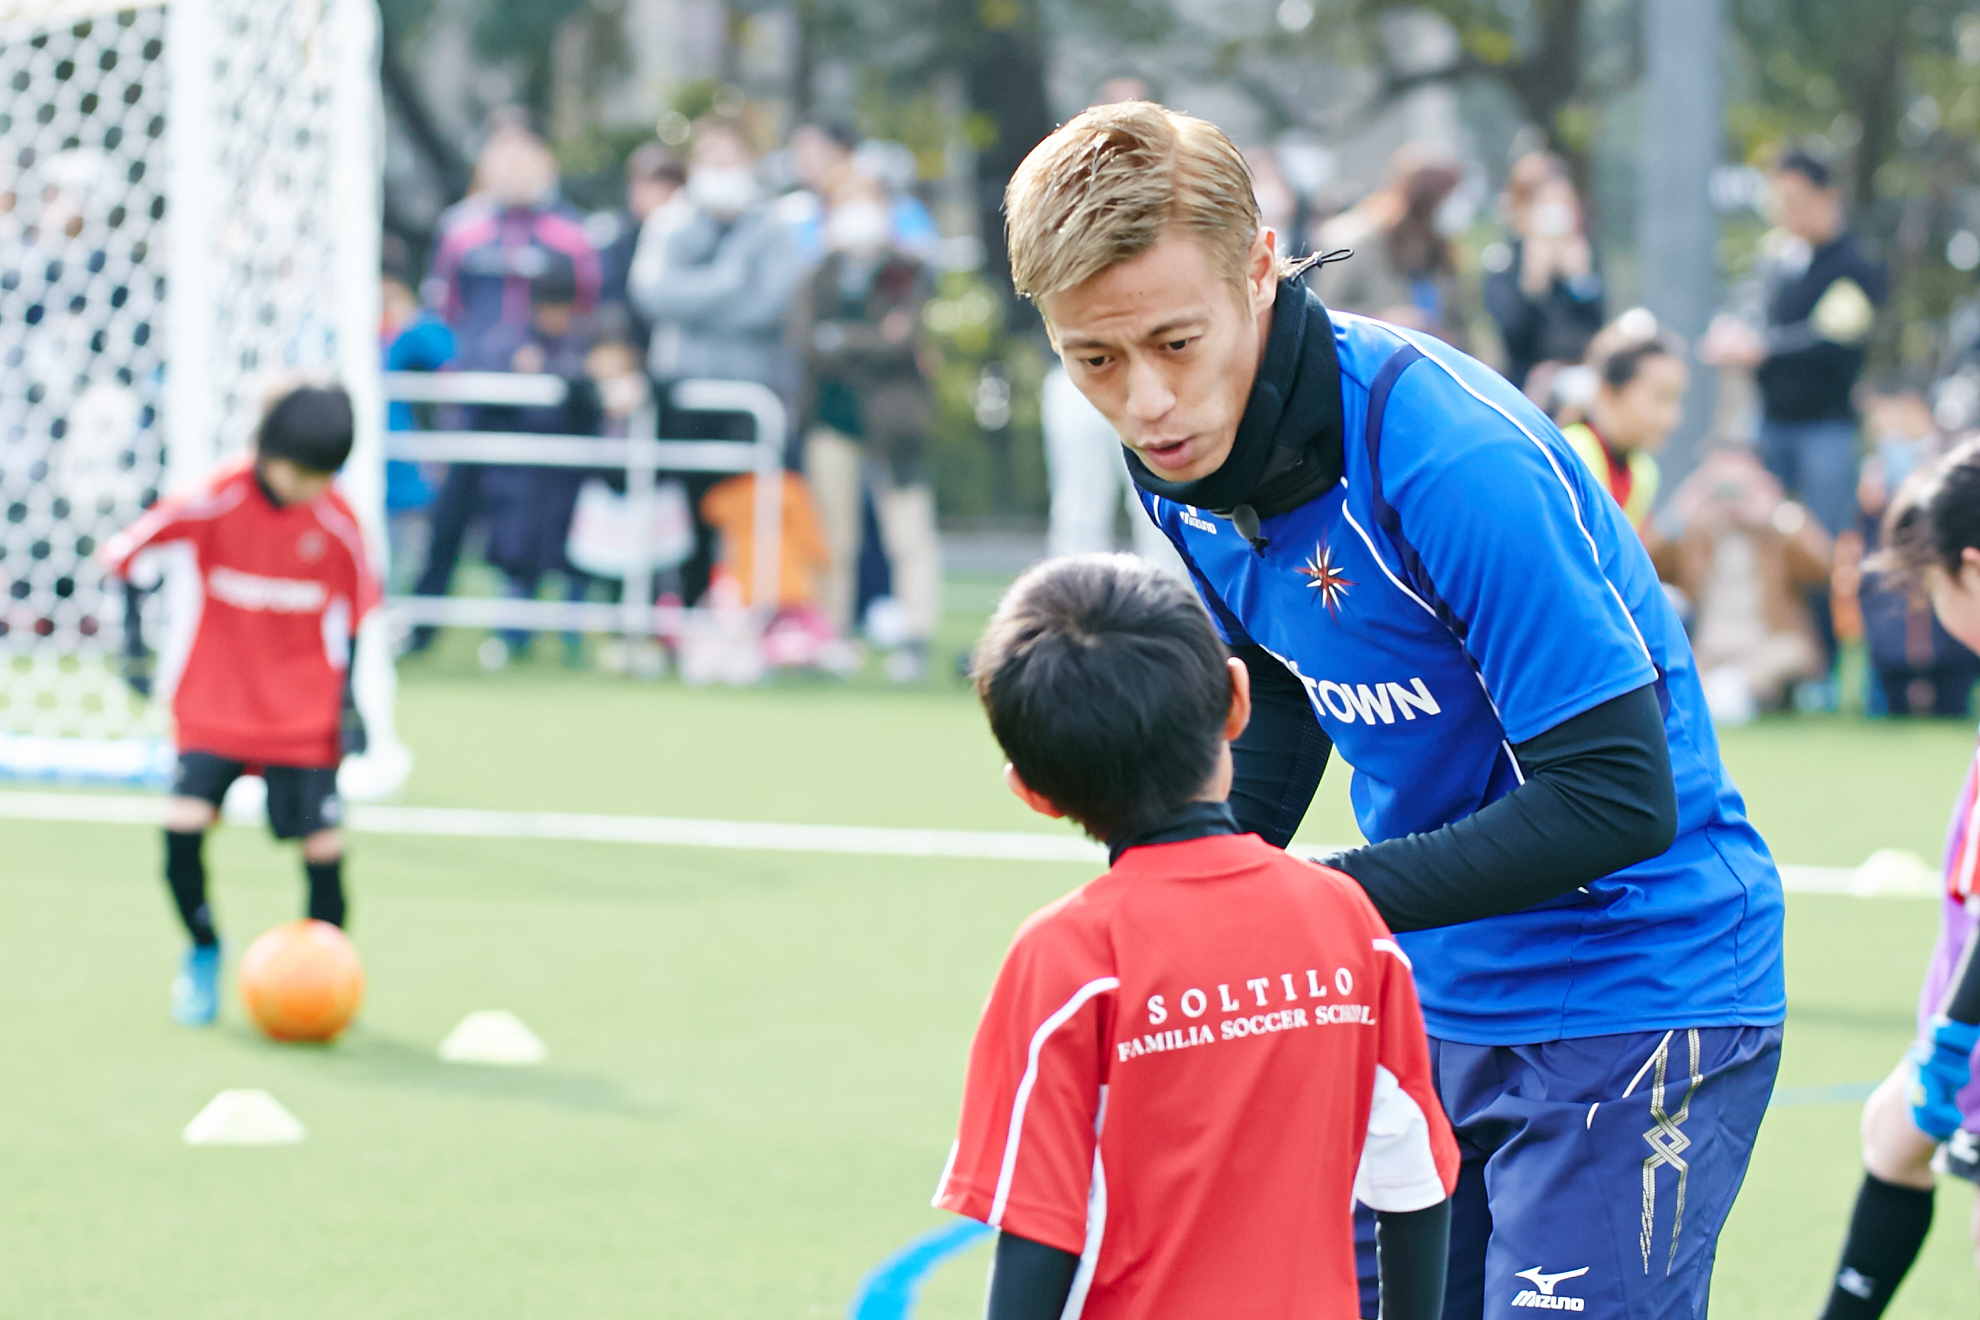 本田圭佑プロデュースのサッカースクールを運営するkskグループとグローバル教育を提供するgsaグループがインターナショナルスクールを開校 Soltilo Gsa株式会社のプレスリリース